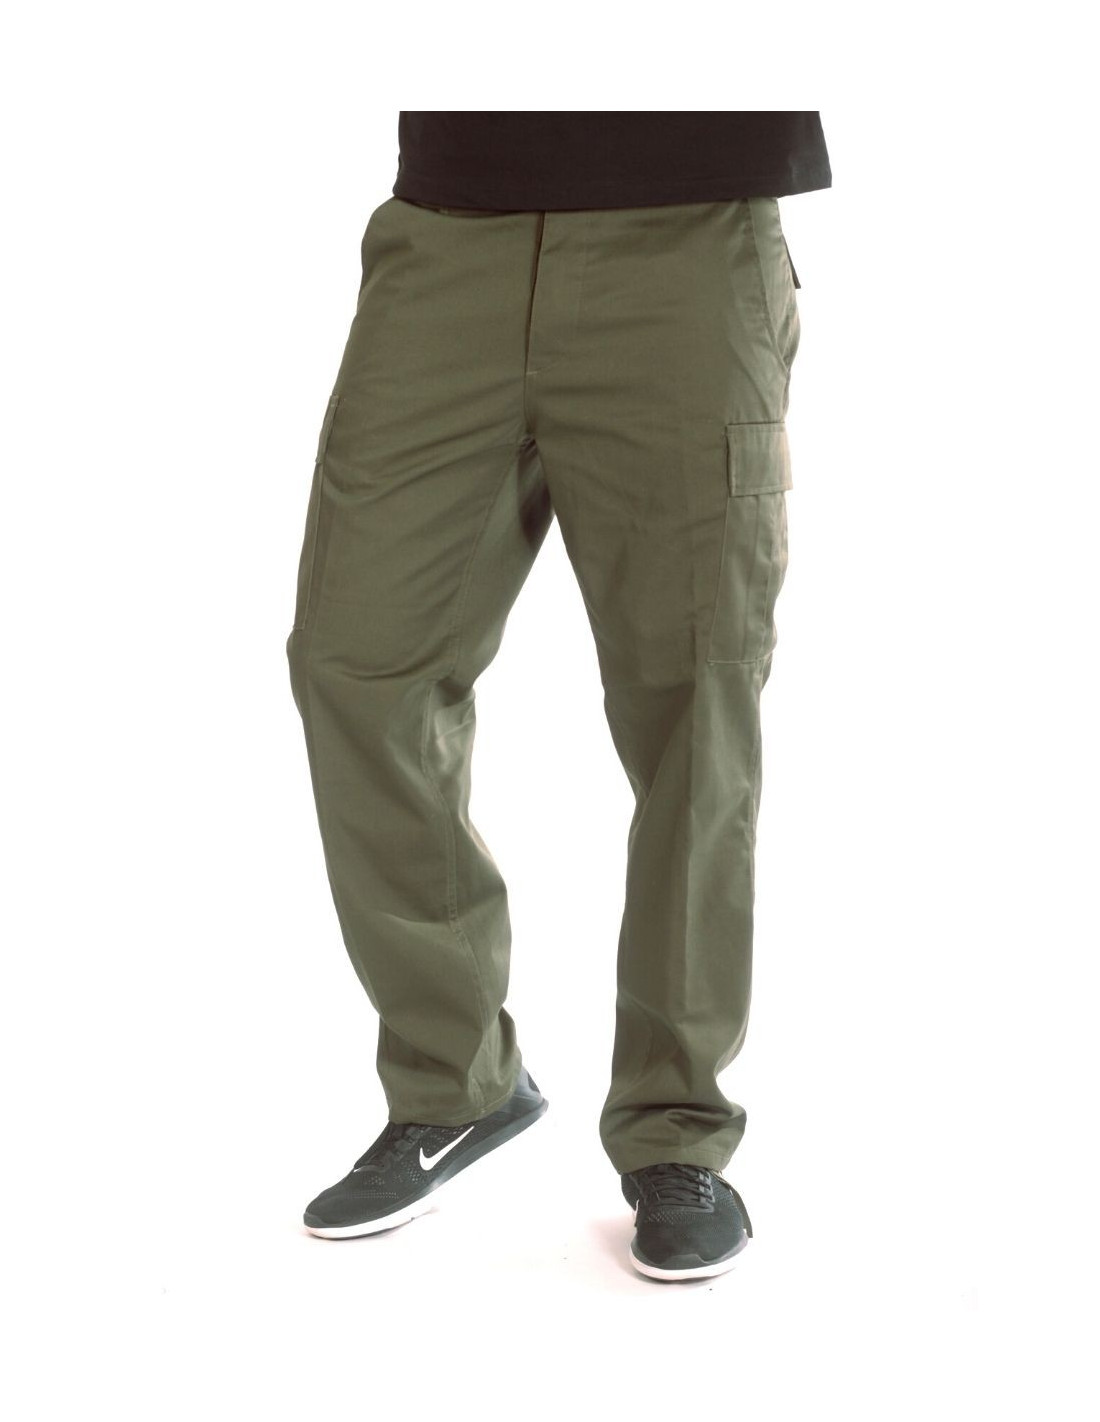 Olive Cargo Pants Regular Fit by Tech wear